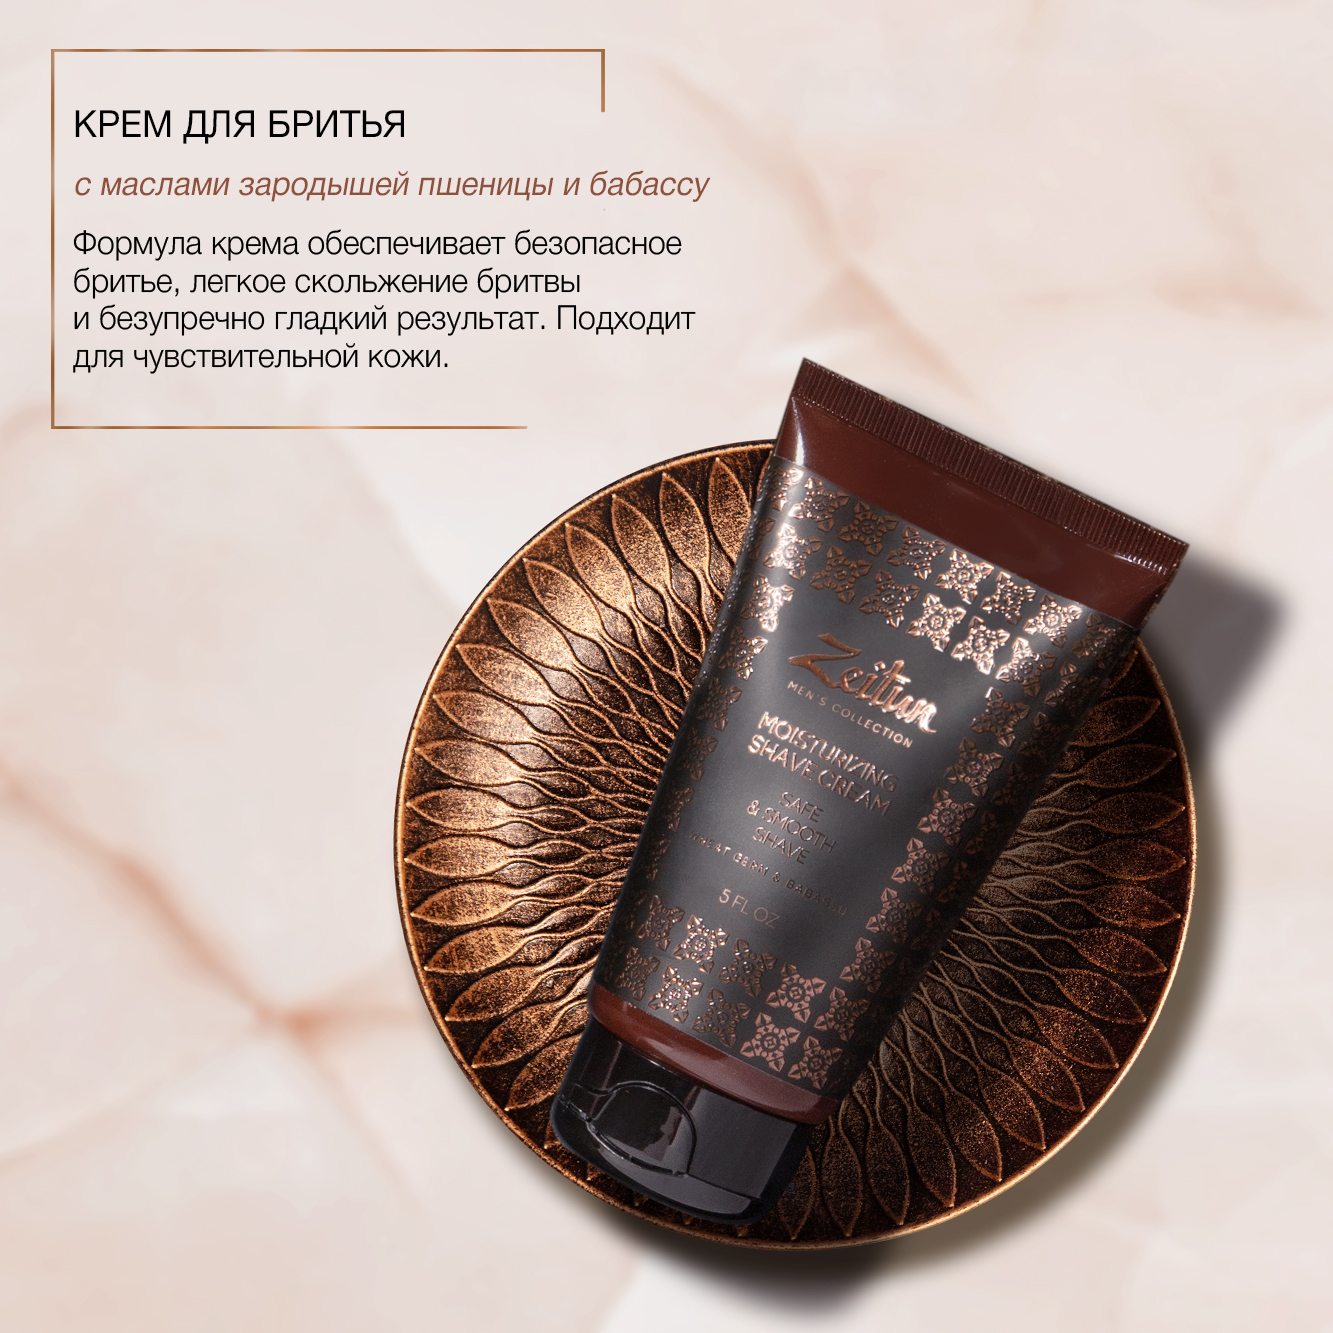 Подарочный набор для мужчин Zeitun "Идеальная гладкость": крем для бритья, лосьон после бритья и шампунь - фото 5